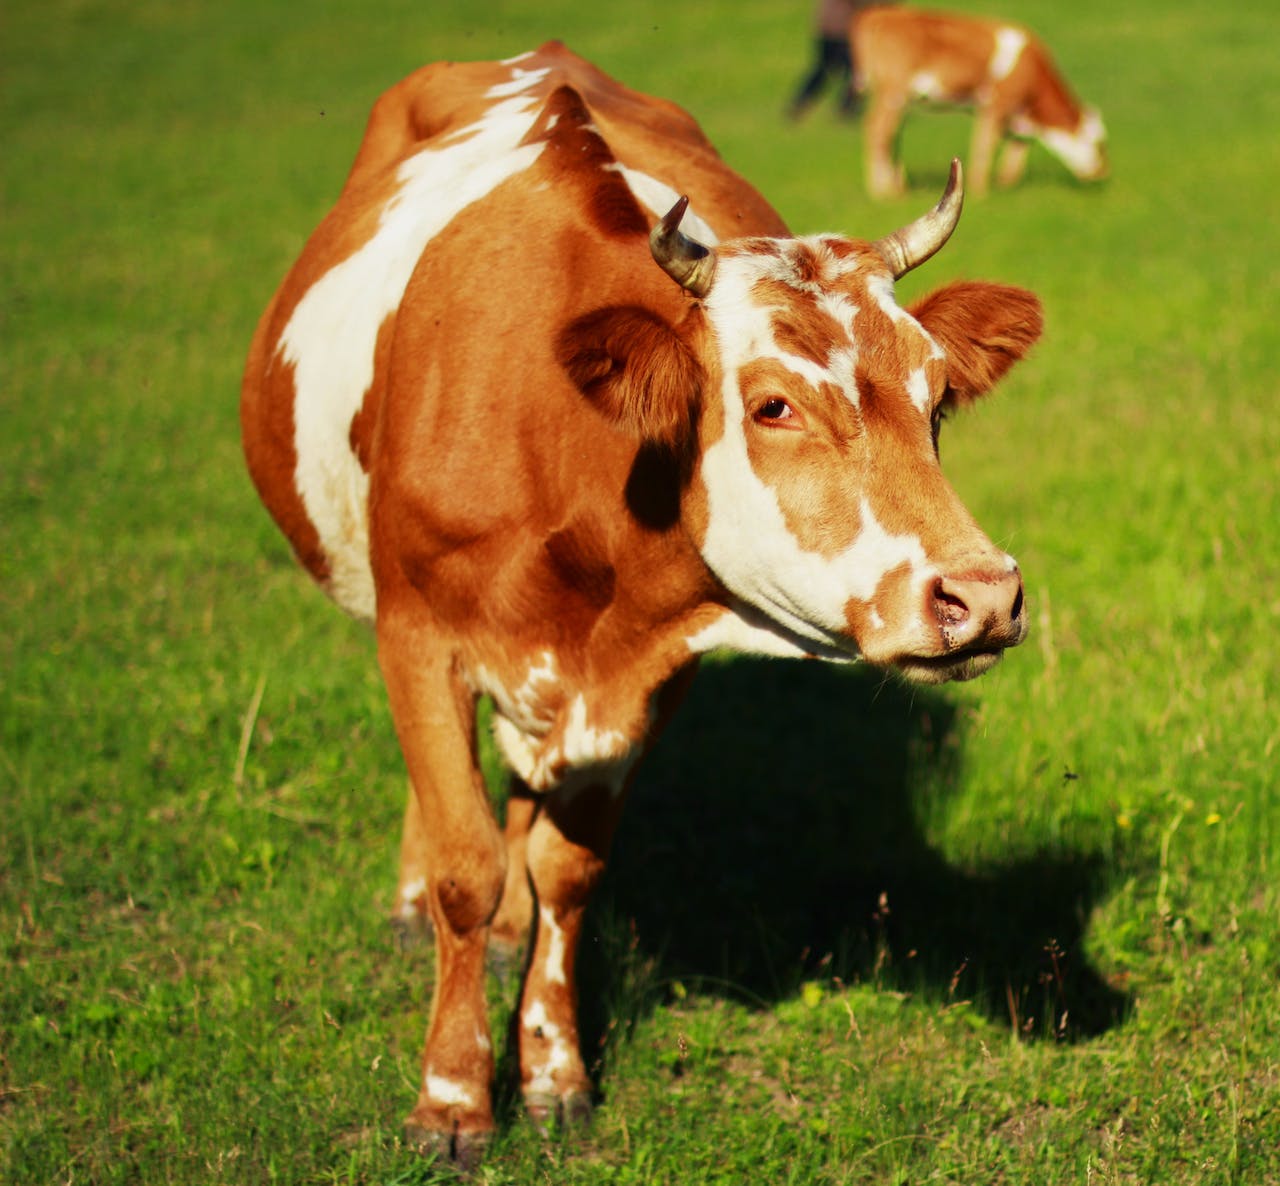 La vaca es un animal placentario. Fotografía de Pixabay.